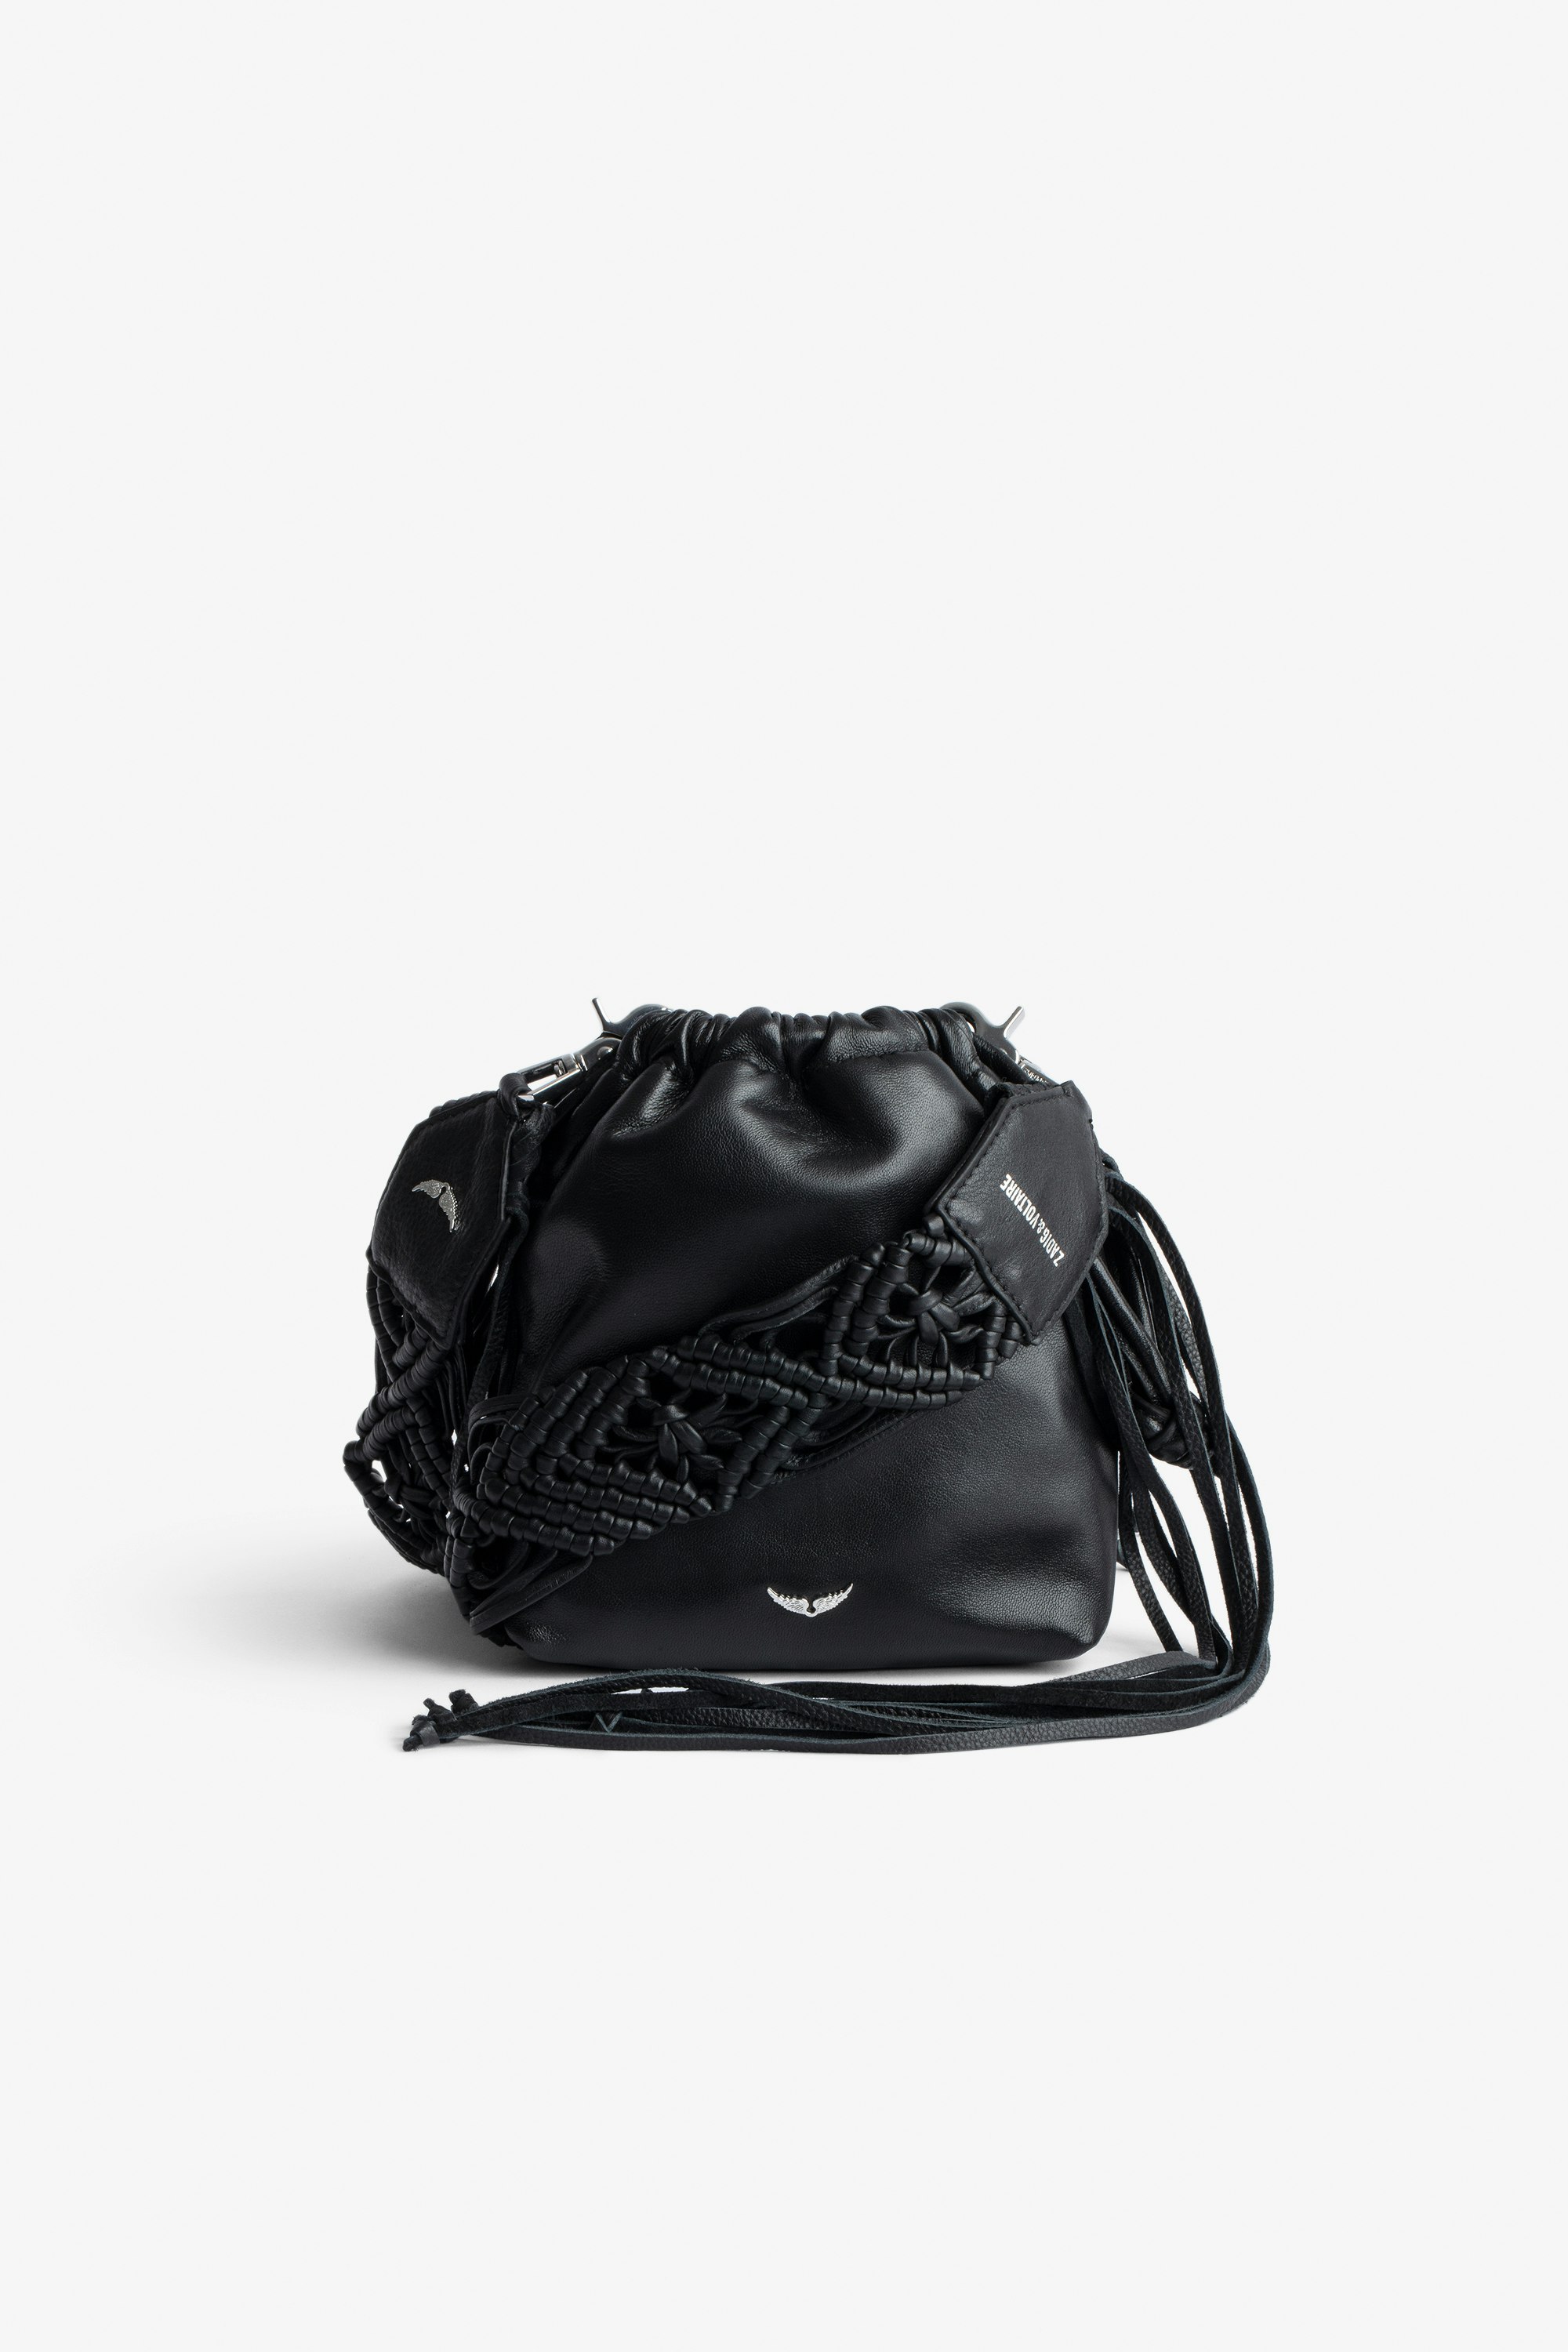 Tasche Rock To Go Damen-Beuteltasche aus schwarzem Leder mit abnehmbarem Makramee-Schulterriemen mit Fransen